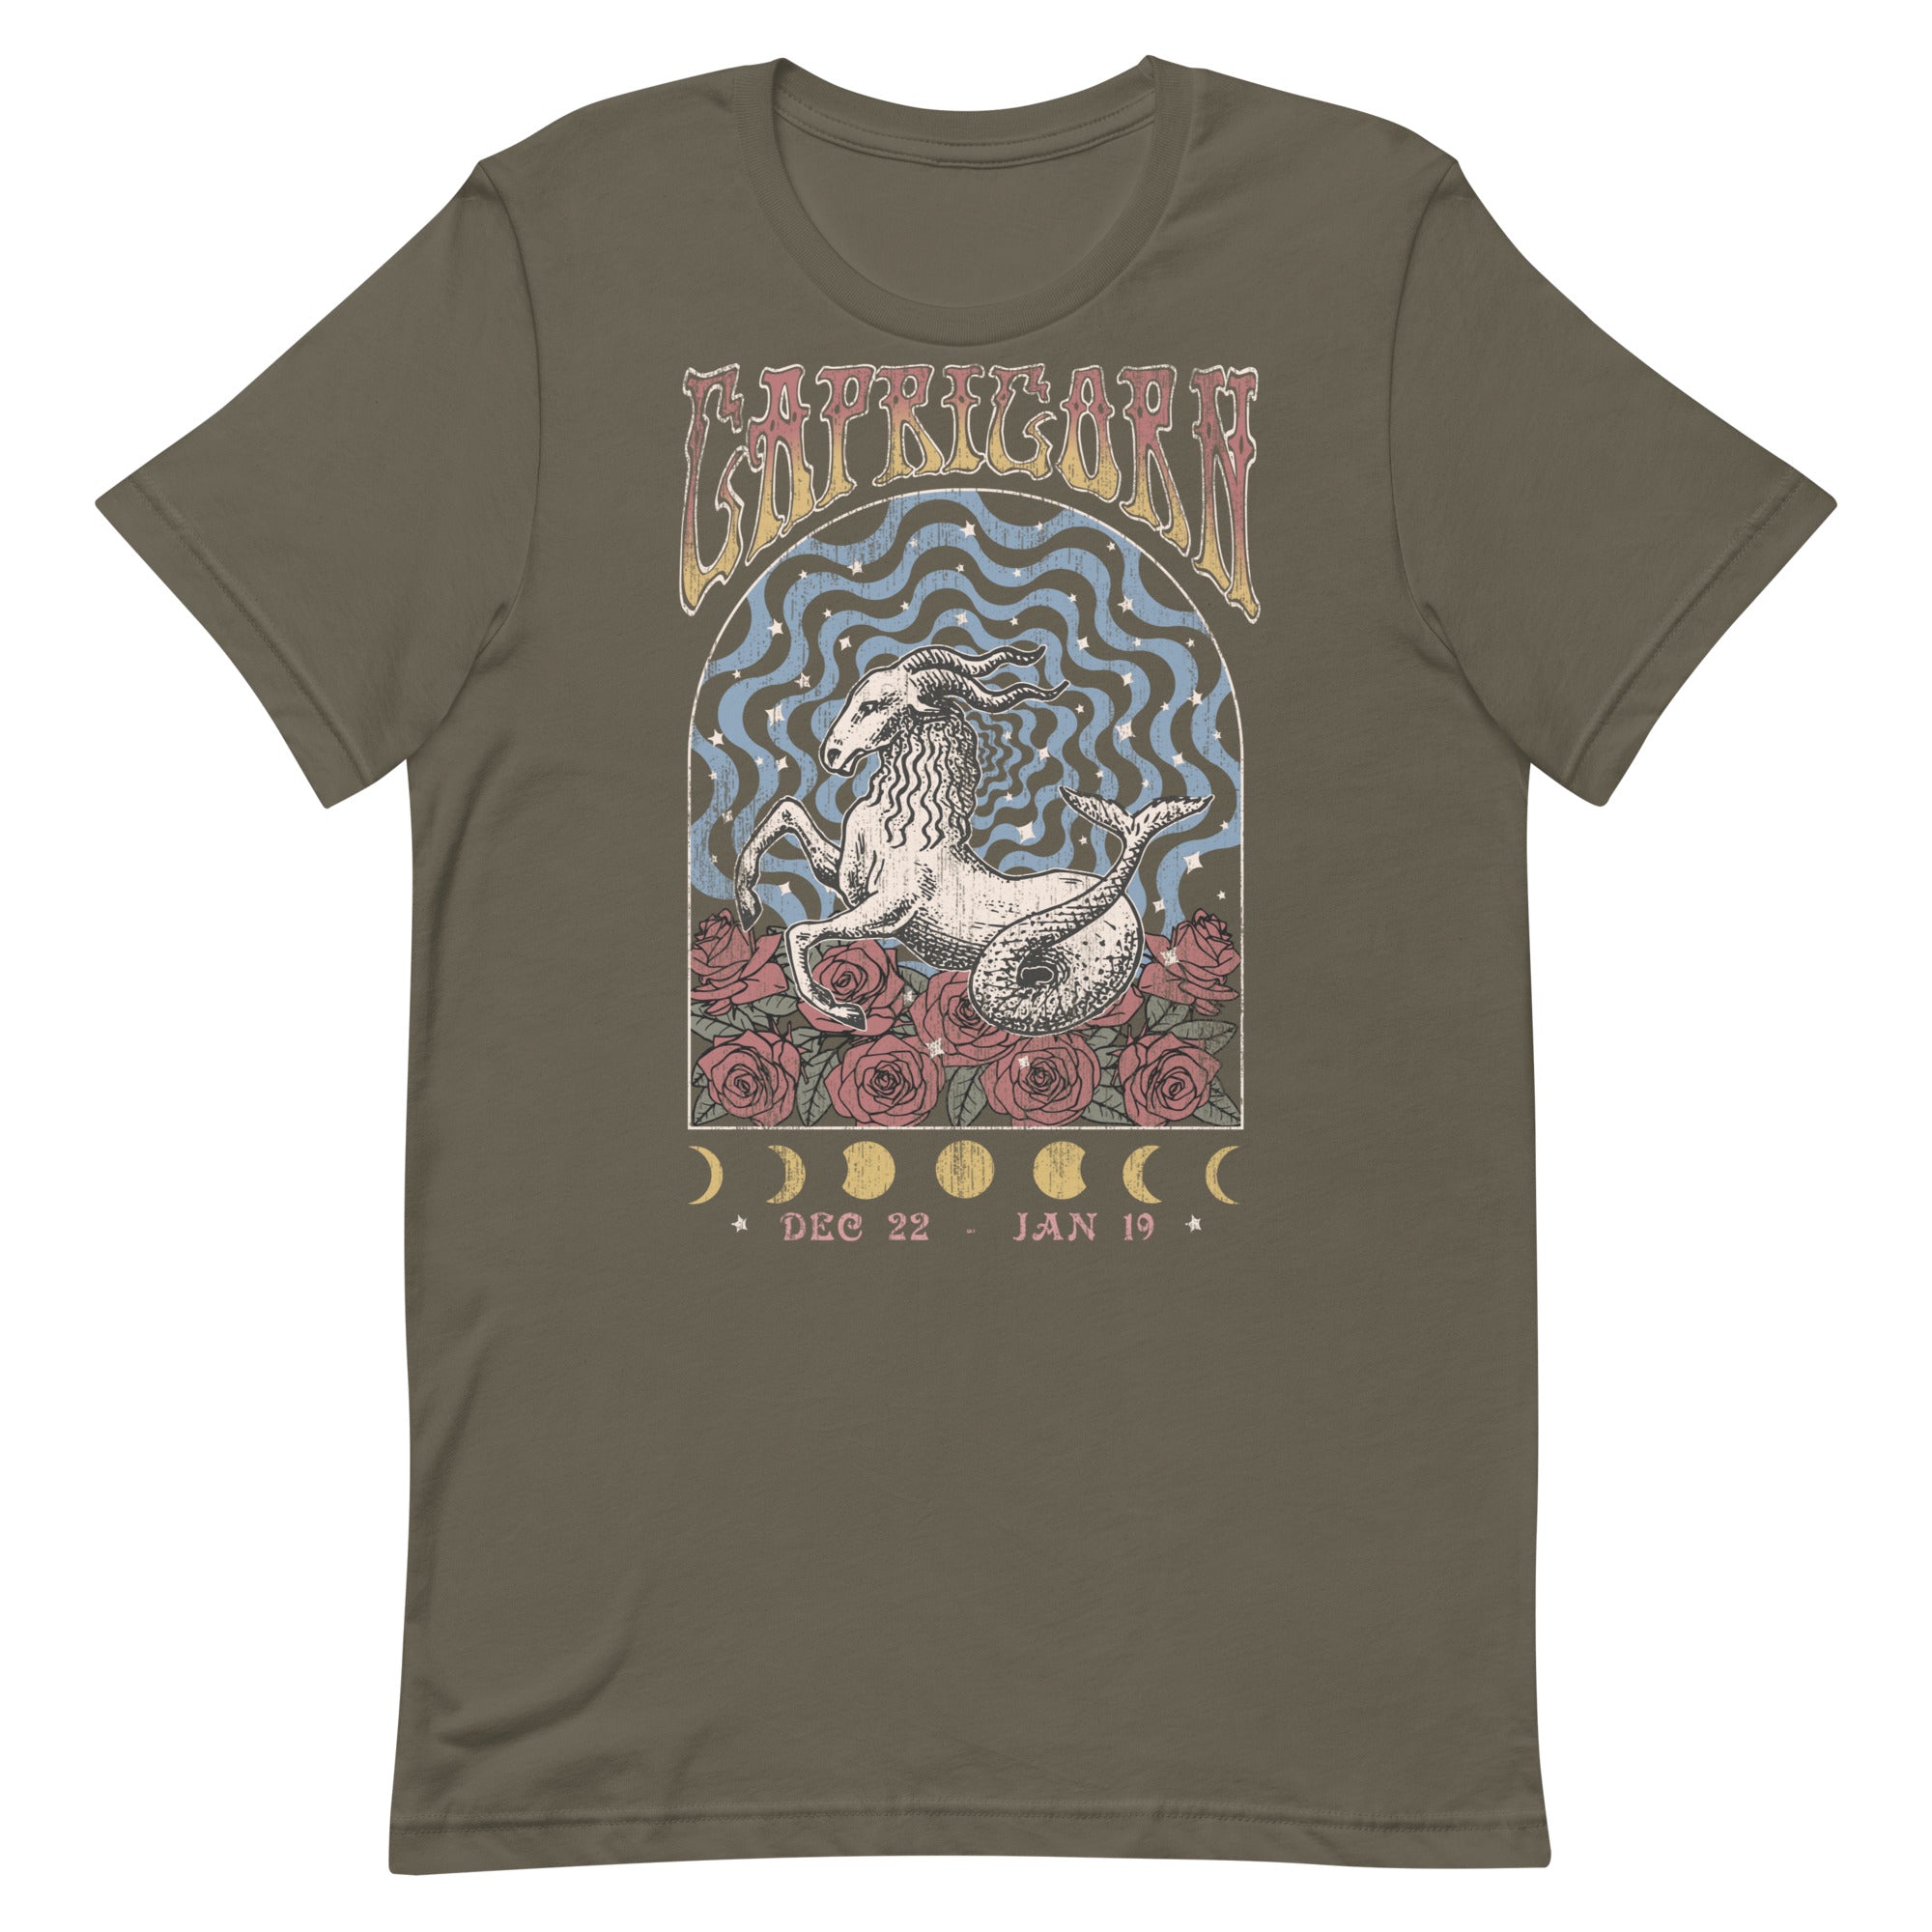 Capricorn Band T-Shirt Inspired Graphic Tee